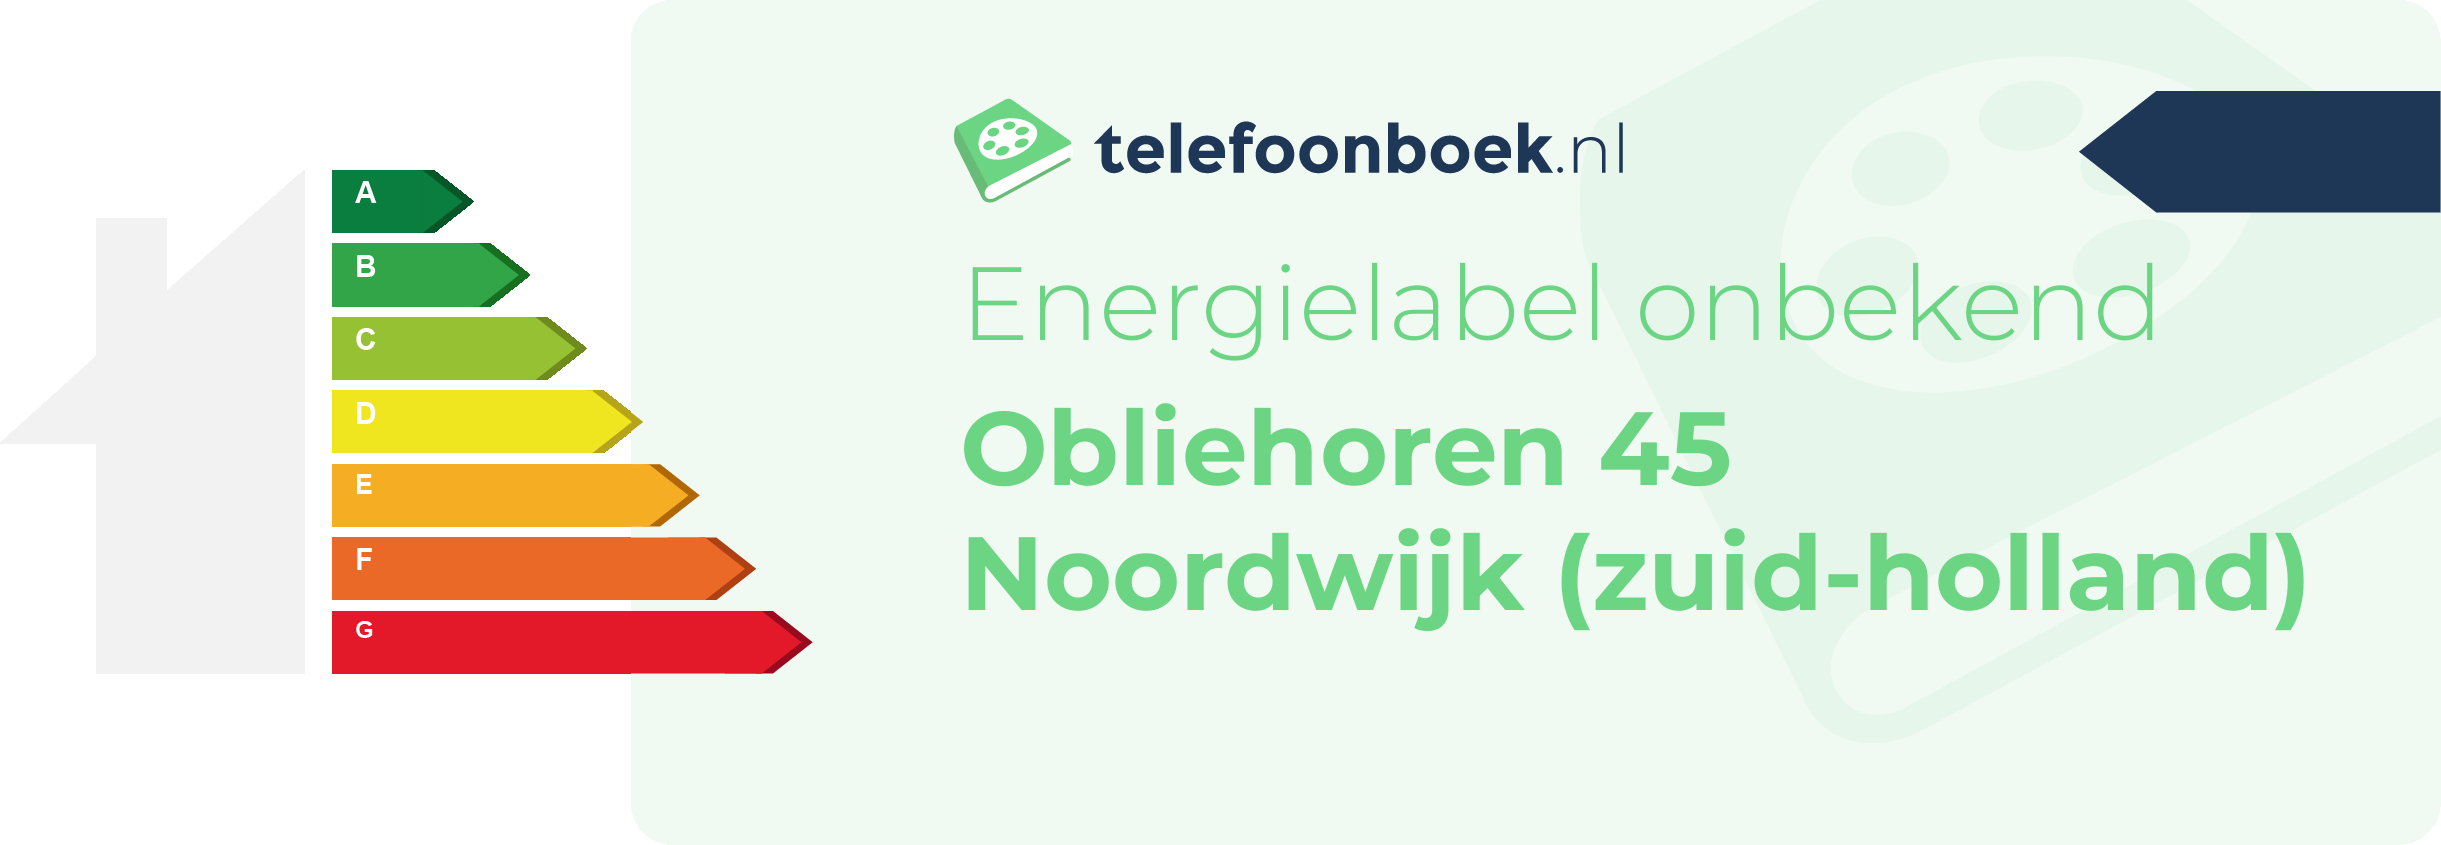 Energielabel Obliehoren 45 Noordwijk (Zuid-Holland)